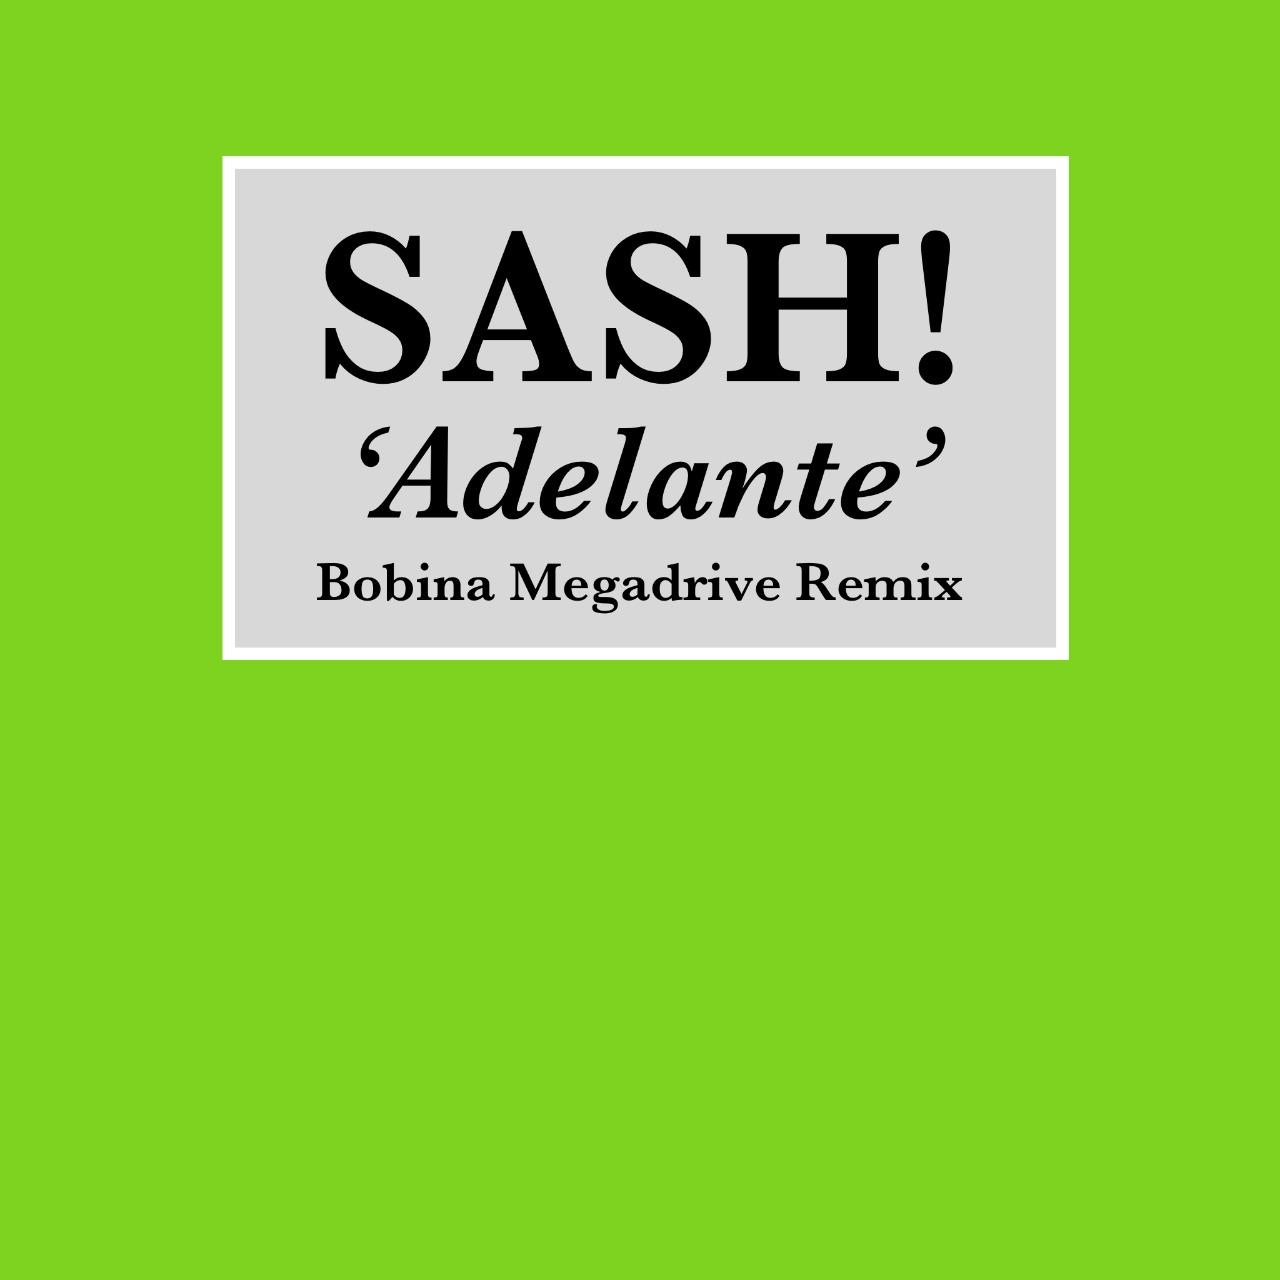 ಡೌನ್ಲೋಡ್ ಮಾಡಿ Sash! - Adelante (Bobina Megadrive Remix)